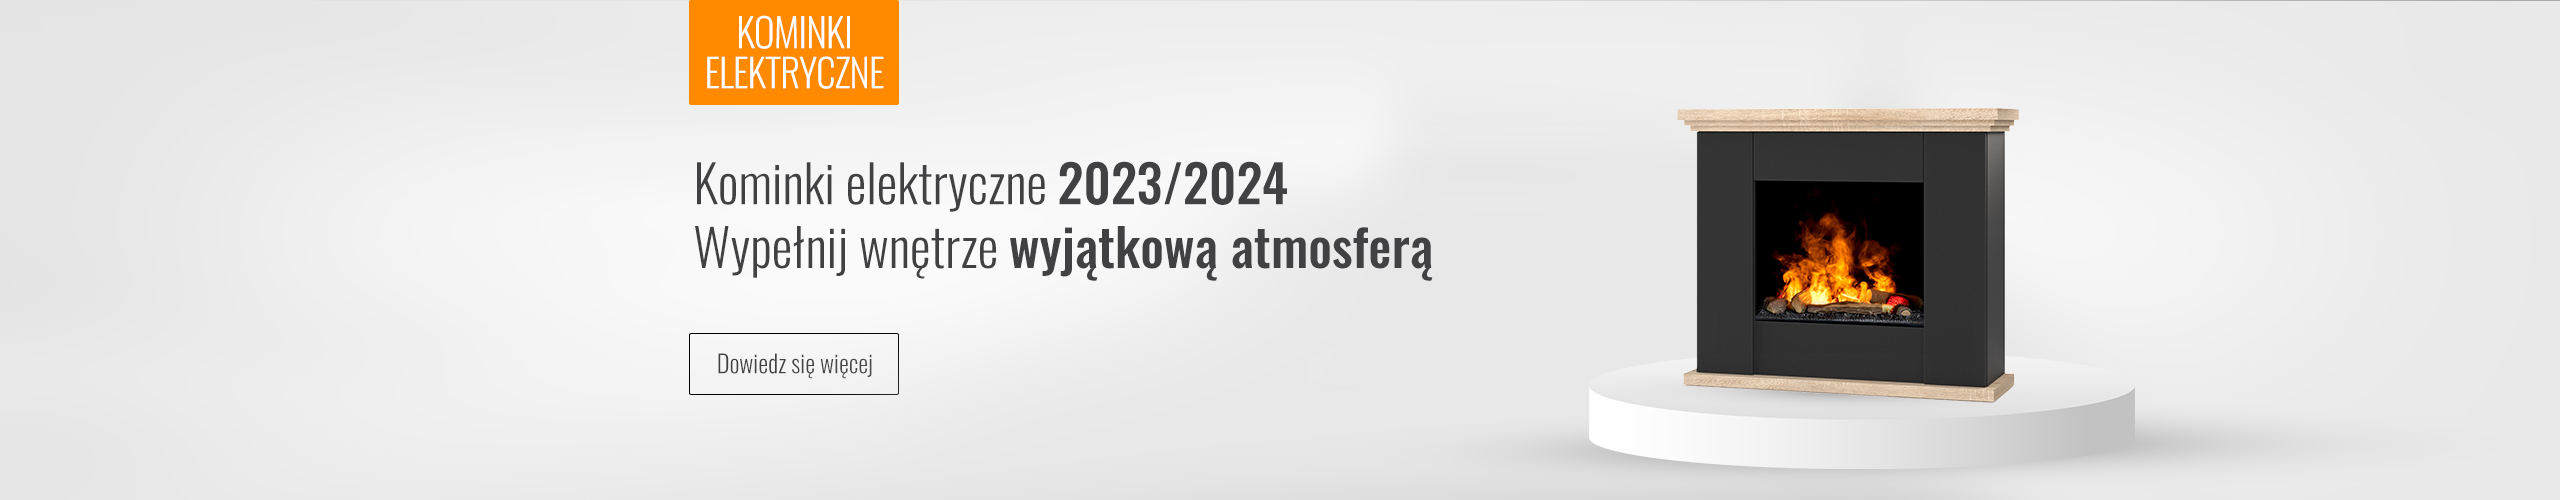 Kominki elektryczne - oferta 2022